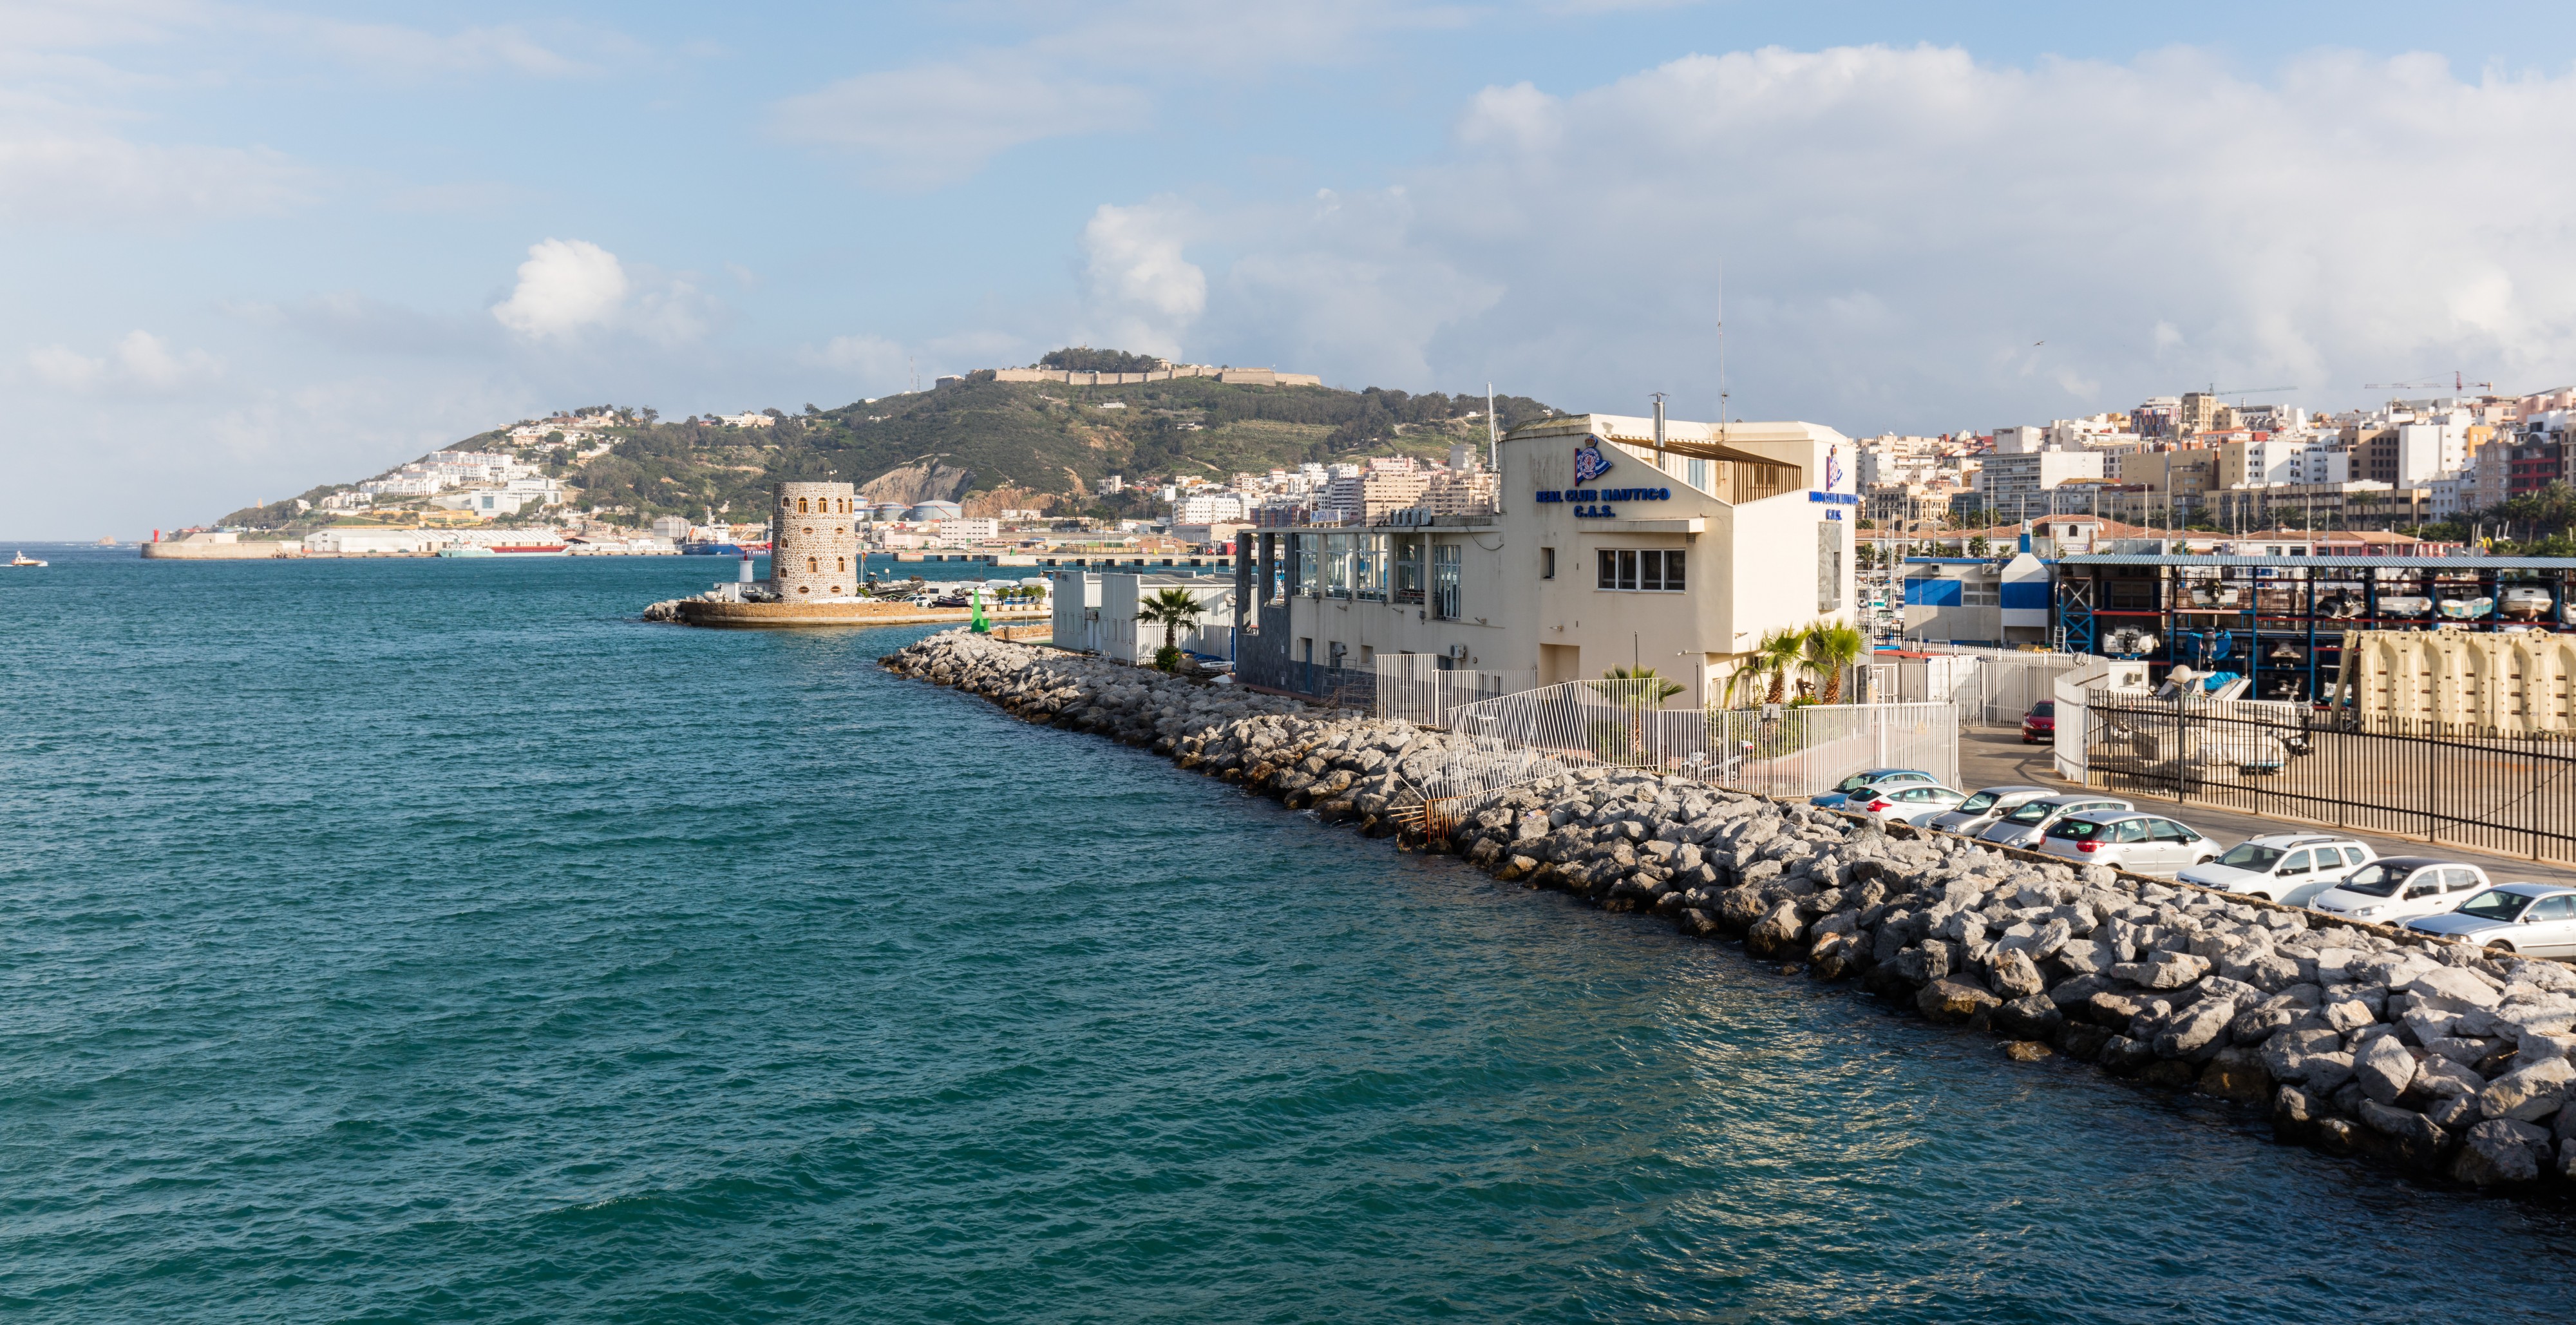 Costa de Ceuta, España, 2015-12-10, DD 08